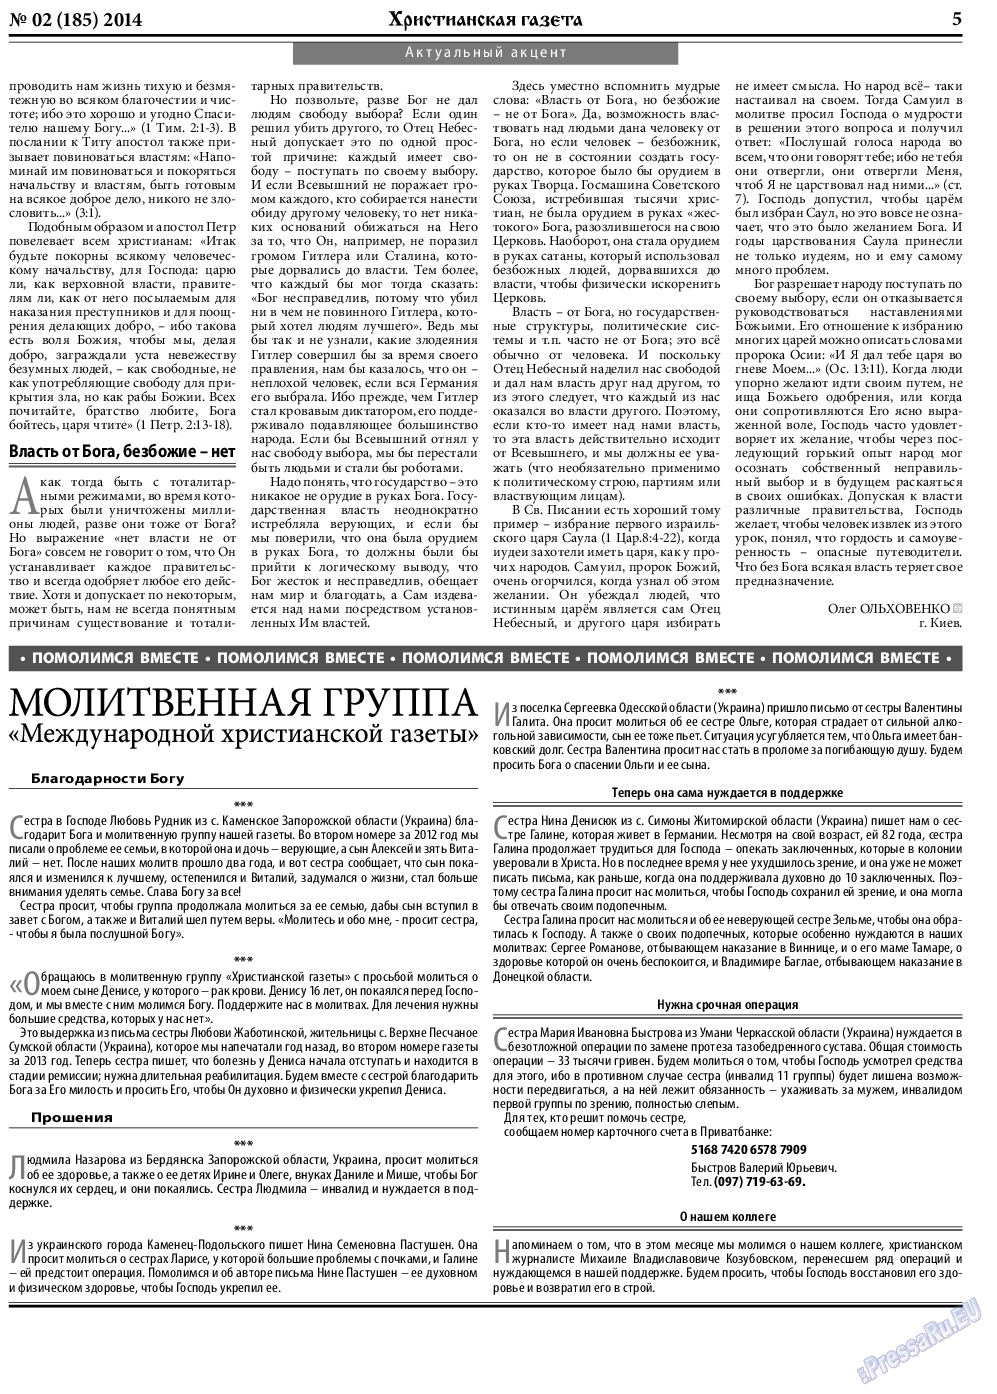 Христианская газета, газета. 2014 №2 стр.5